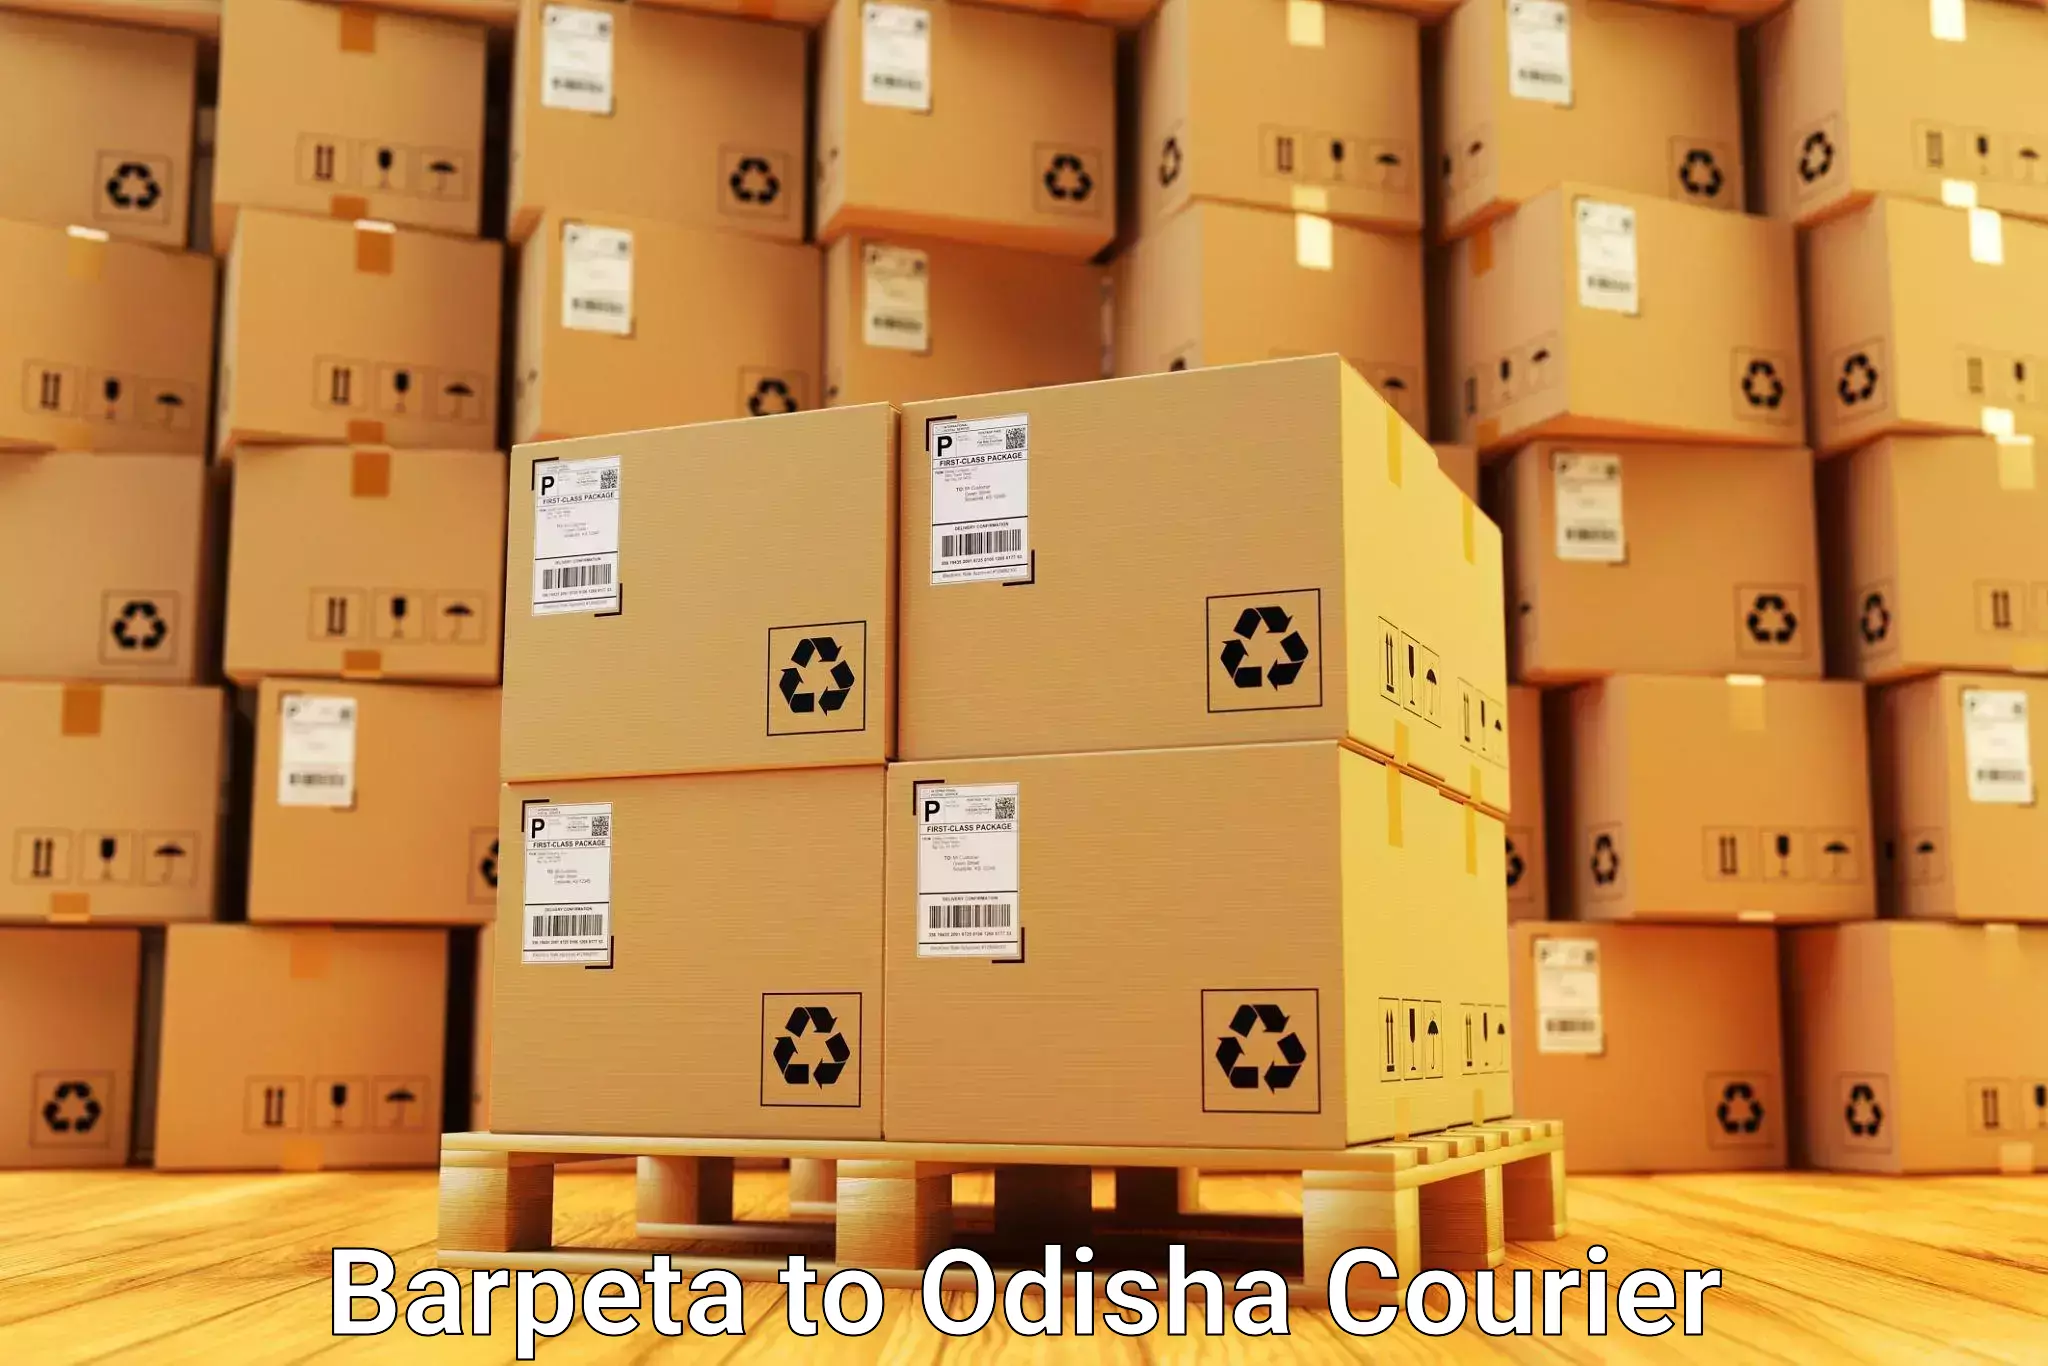 Household moving experts Barpeta to Baripada